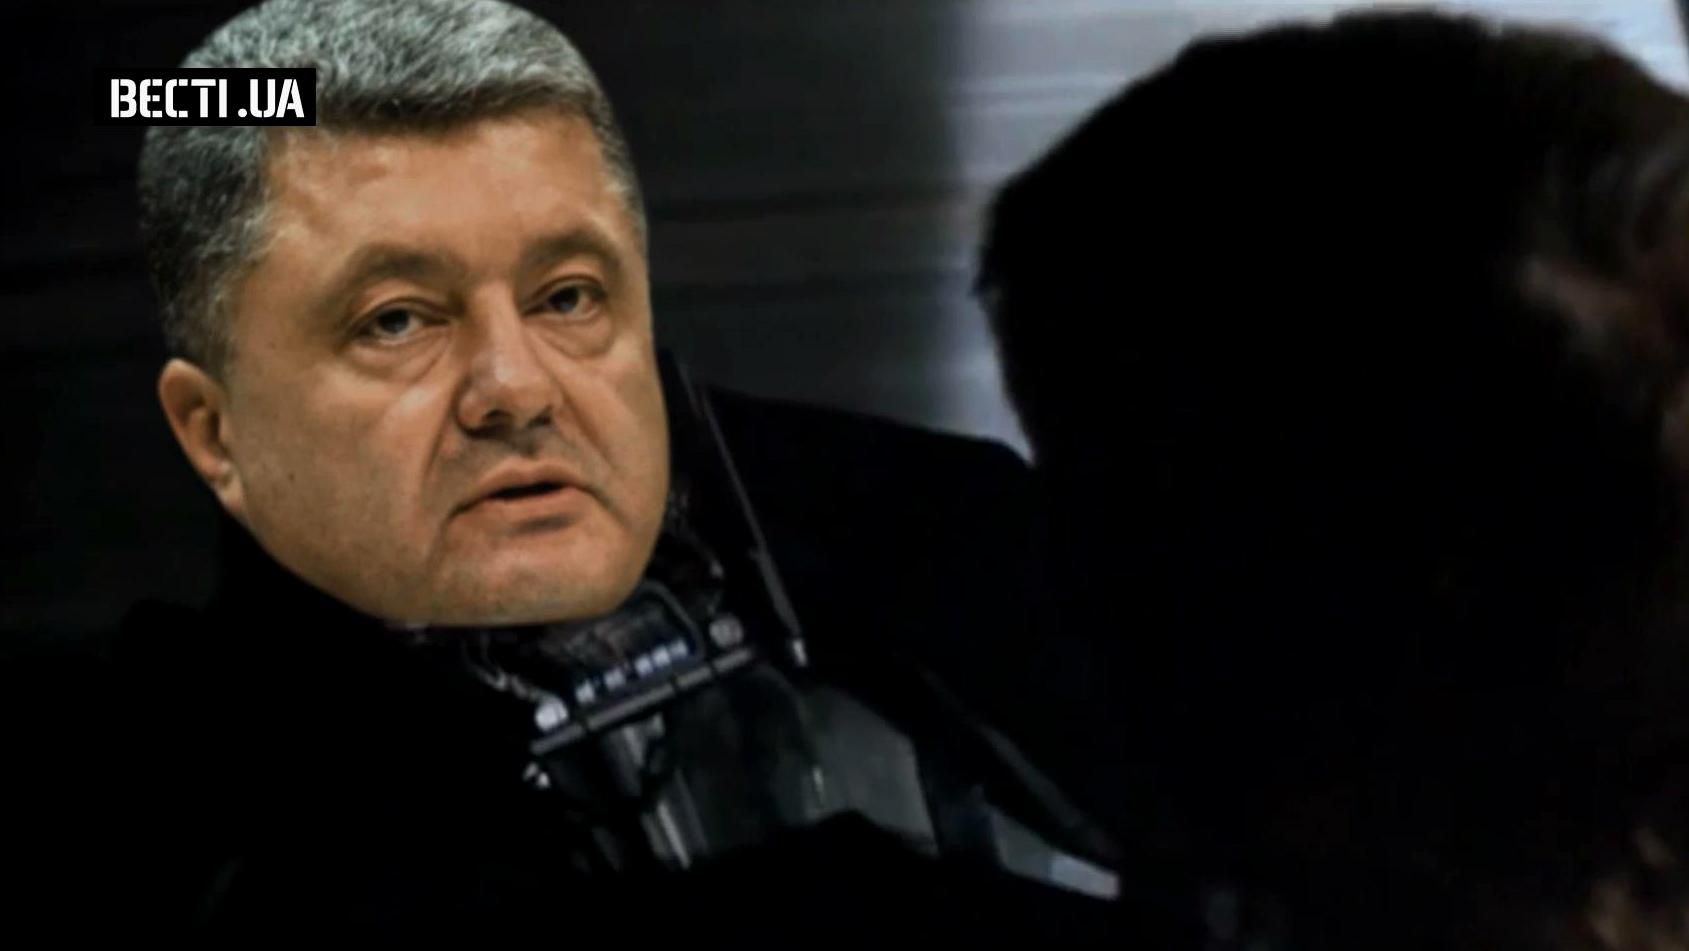 Какими персонажами "Звездных войн" были бы украинские политики